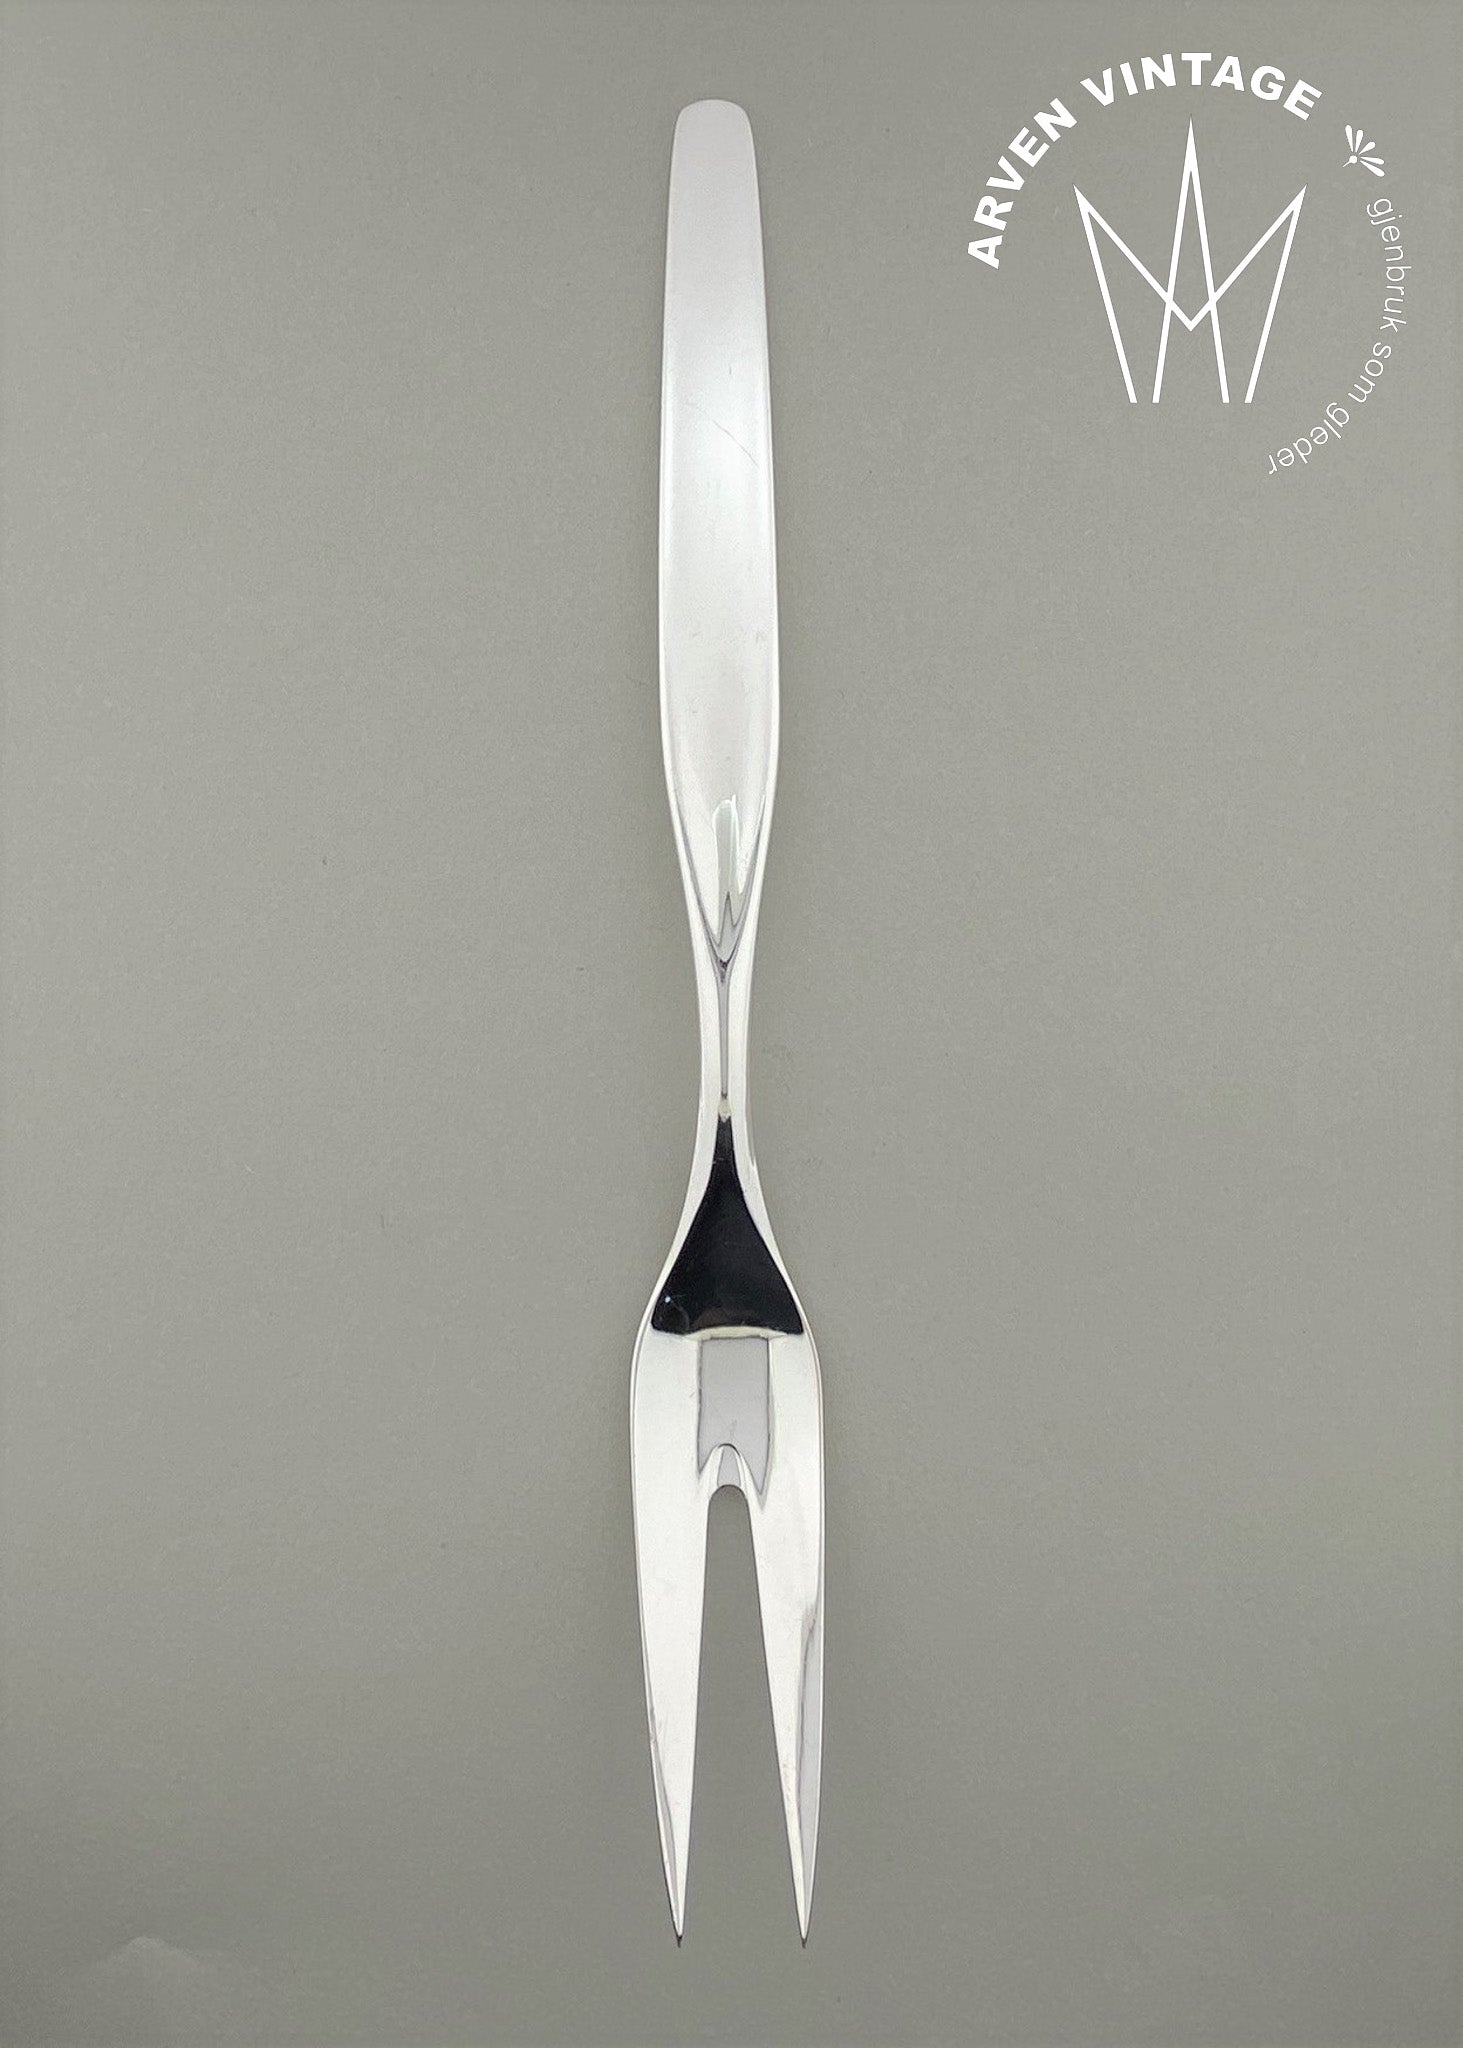 Vintage Aase cutlery fork